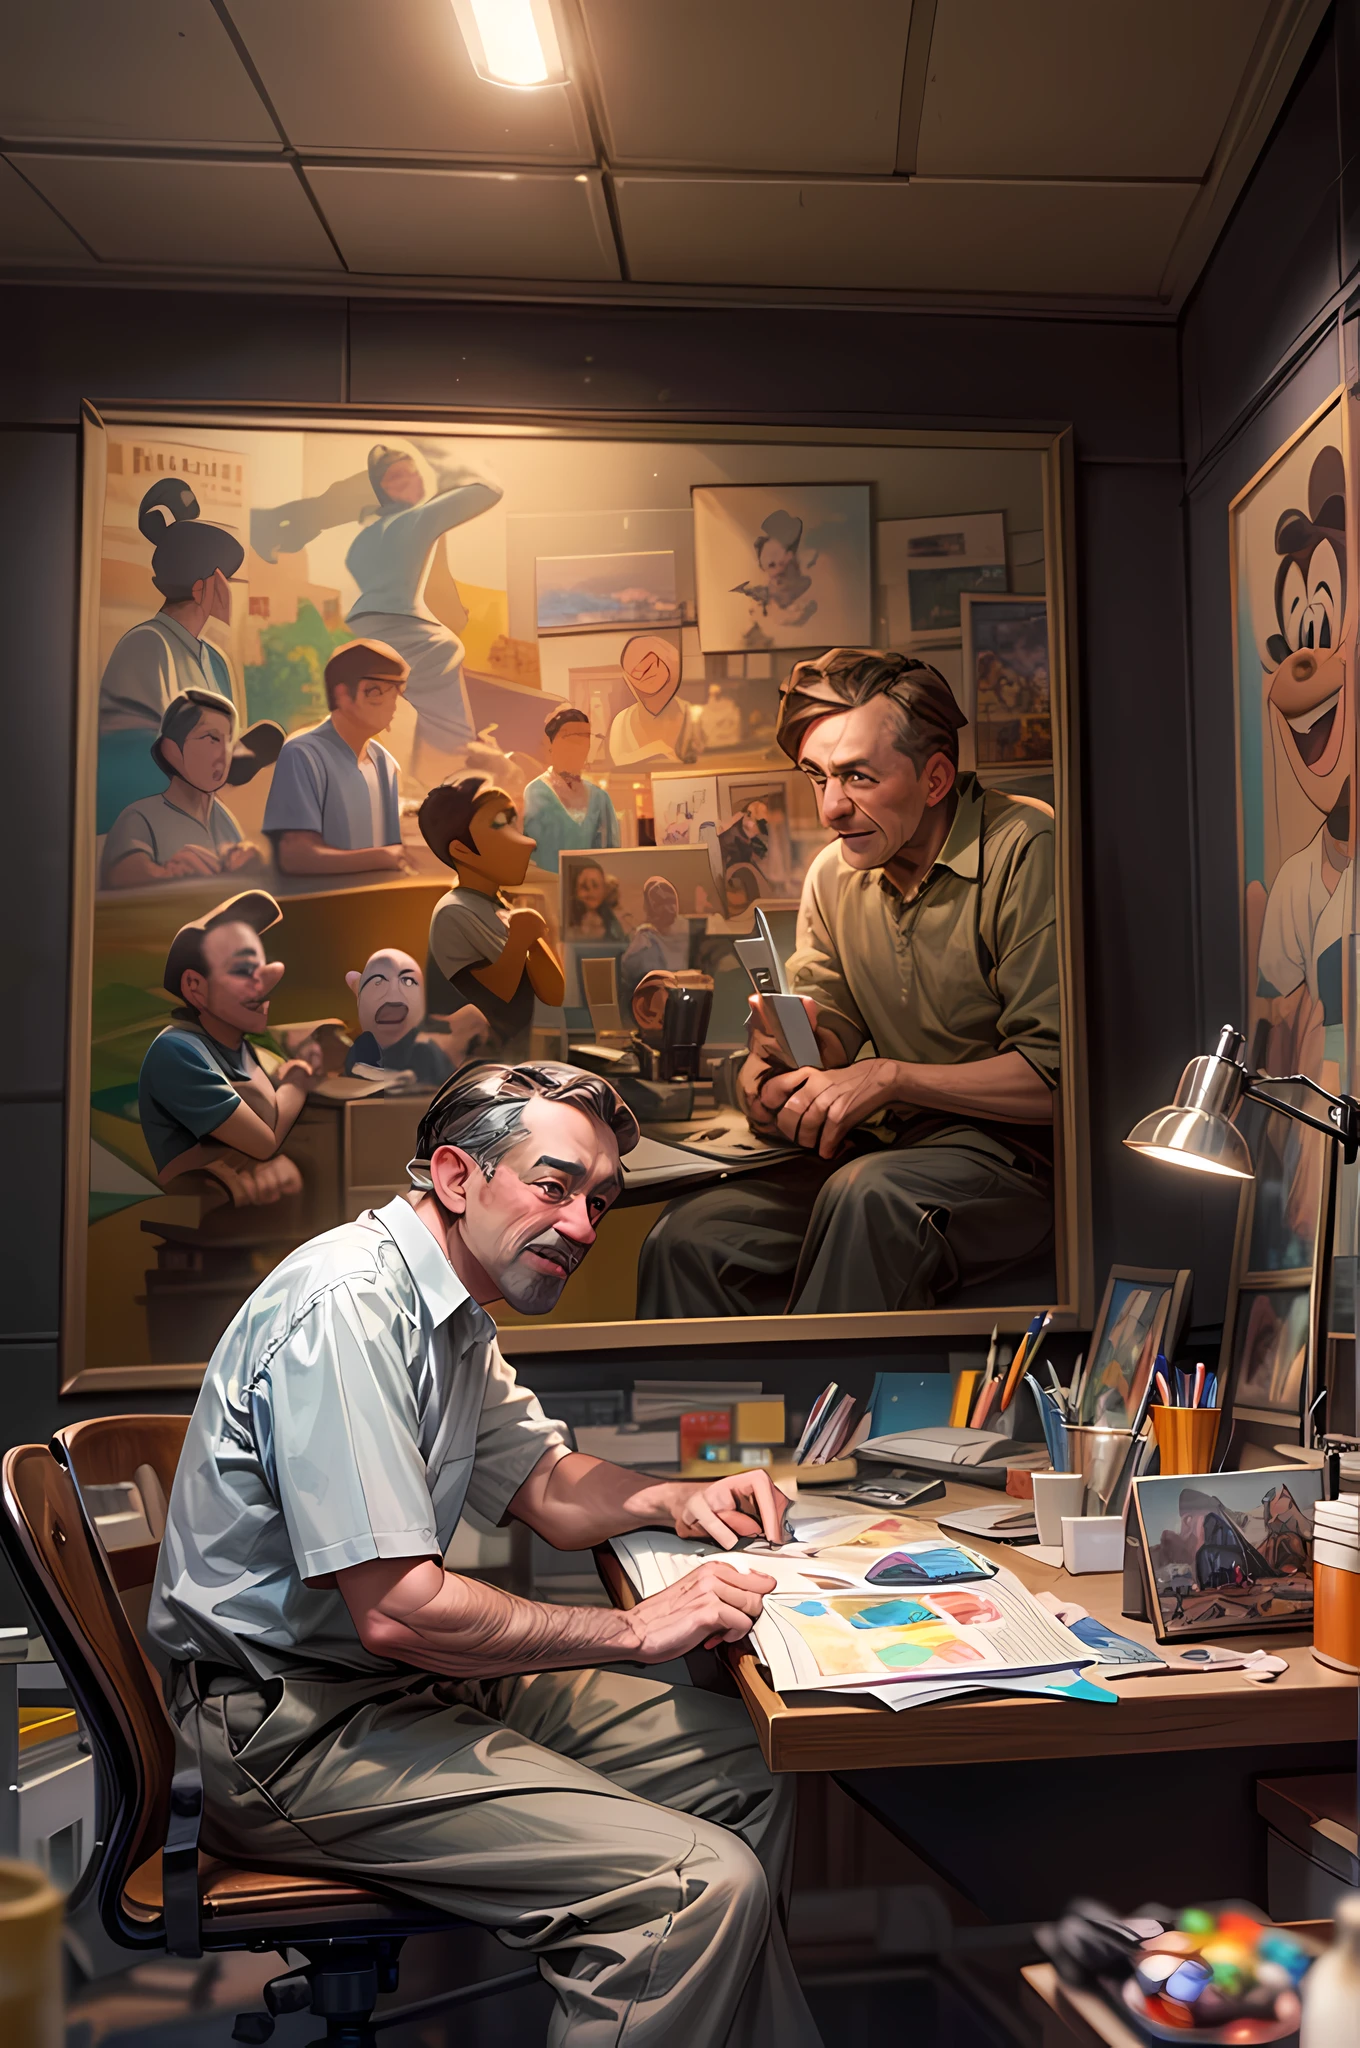 的肖像 (華特迪士尼: 1.3), 坐在工作室裡致力於他的下一個項目, 螢光, 牆上畫著著名的迪士尼人物,  動漫自習室背景, 超詳細, 傑作, 最好的品質, 逼真的, 皮克斯風格